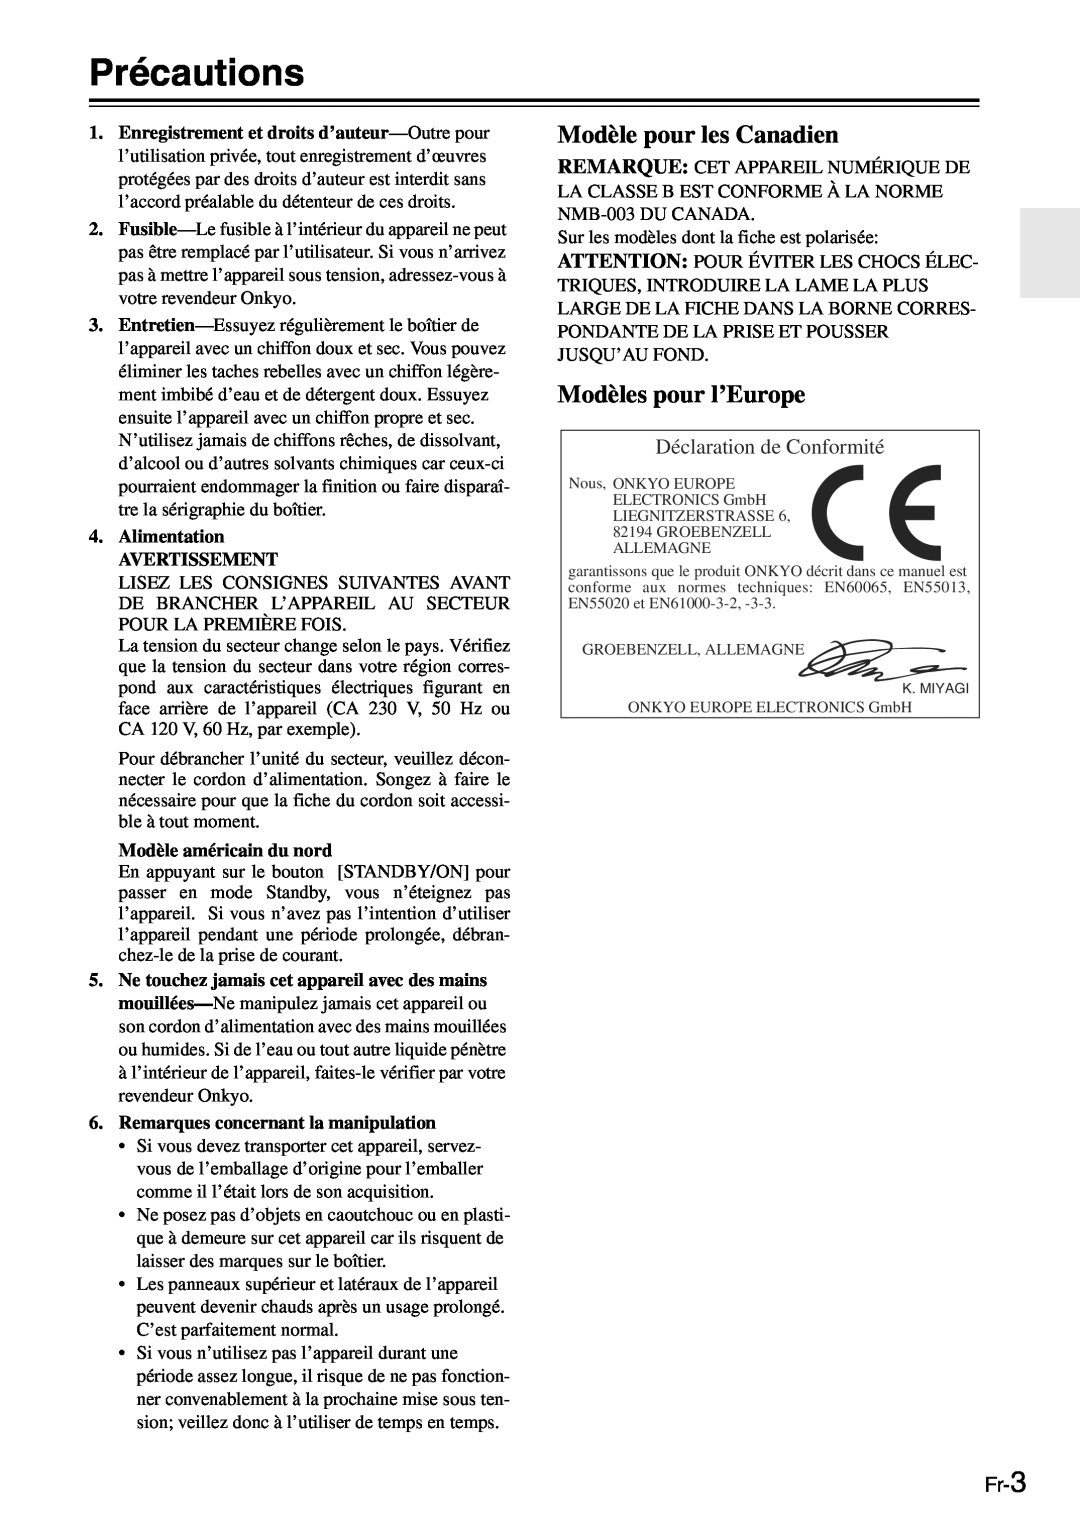 Onkyo TX-SR705 manual Précautions, Modèle pour les Canadien, Modèles pour l’Europe, Déclaration de Conformité, Fr-3 